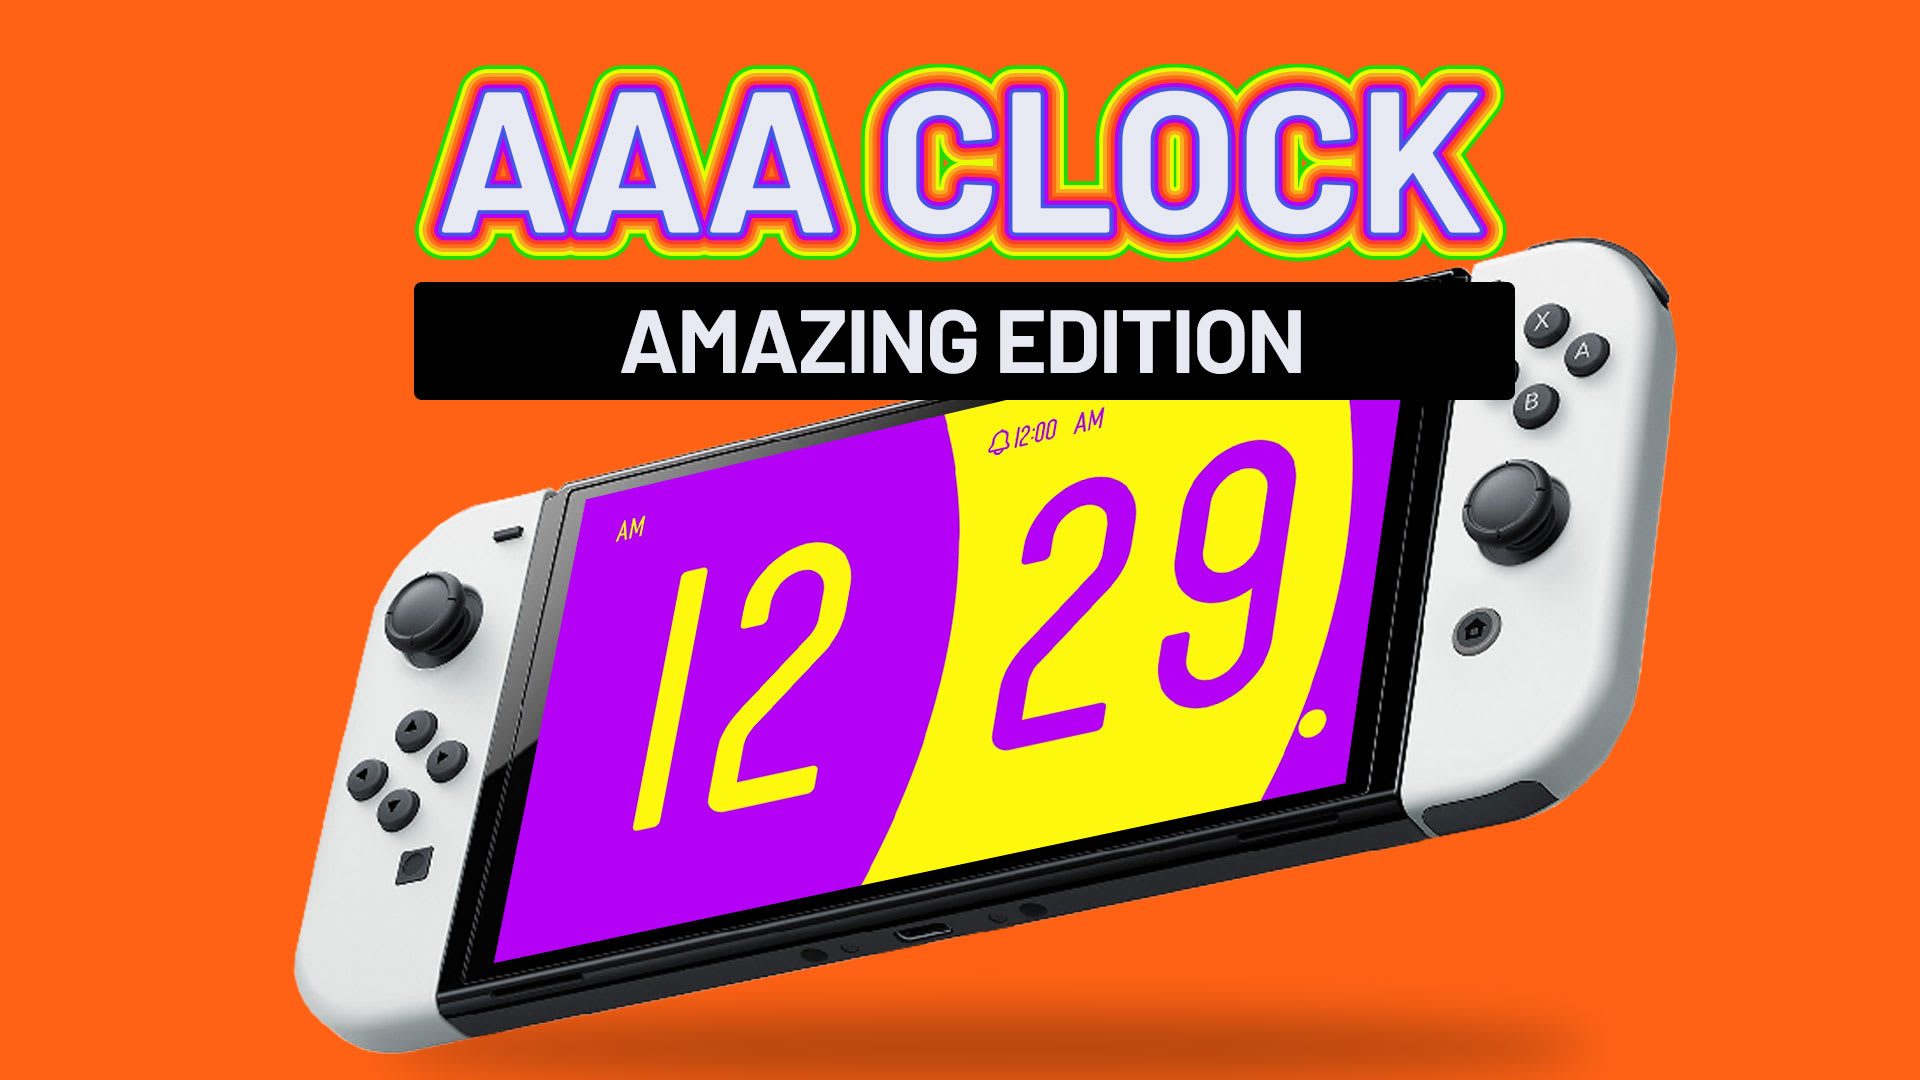 AAA Clock Amazing Edition